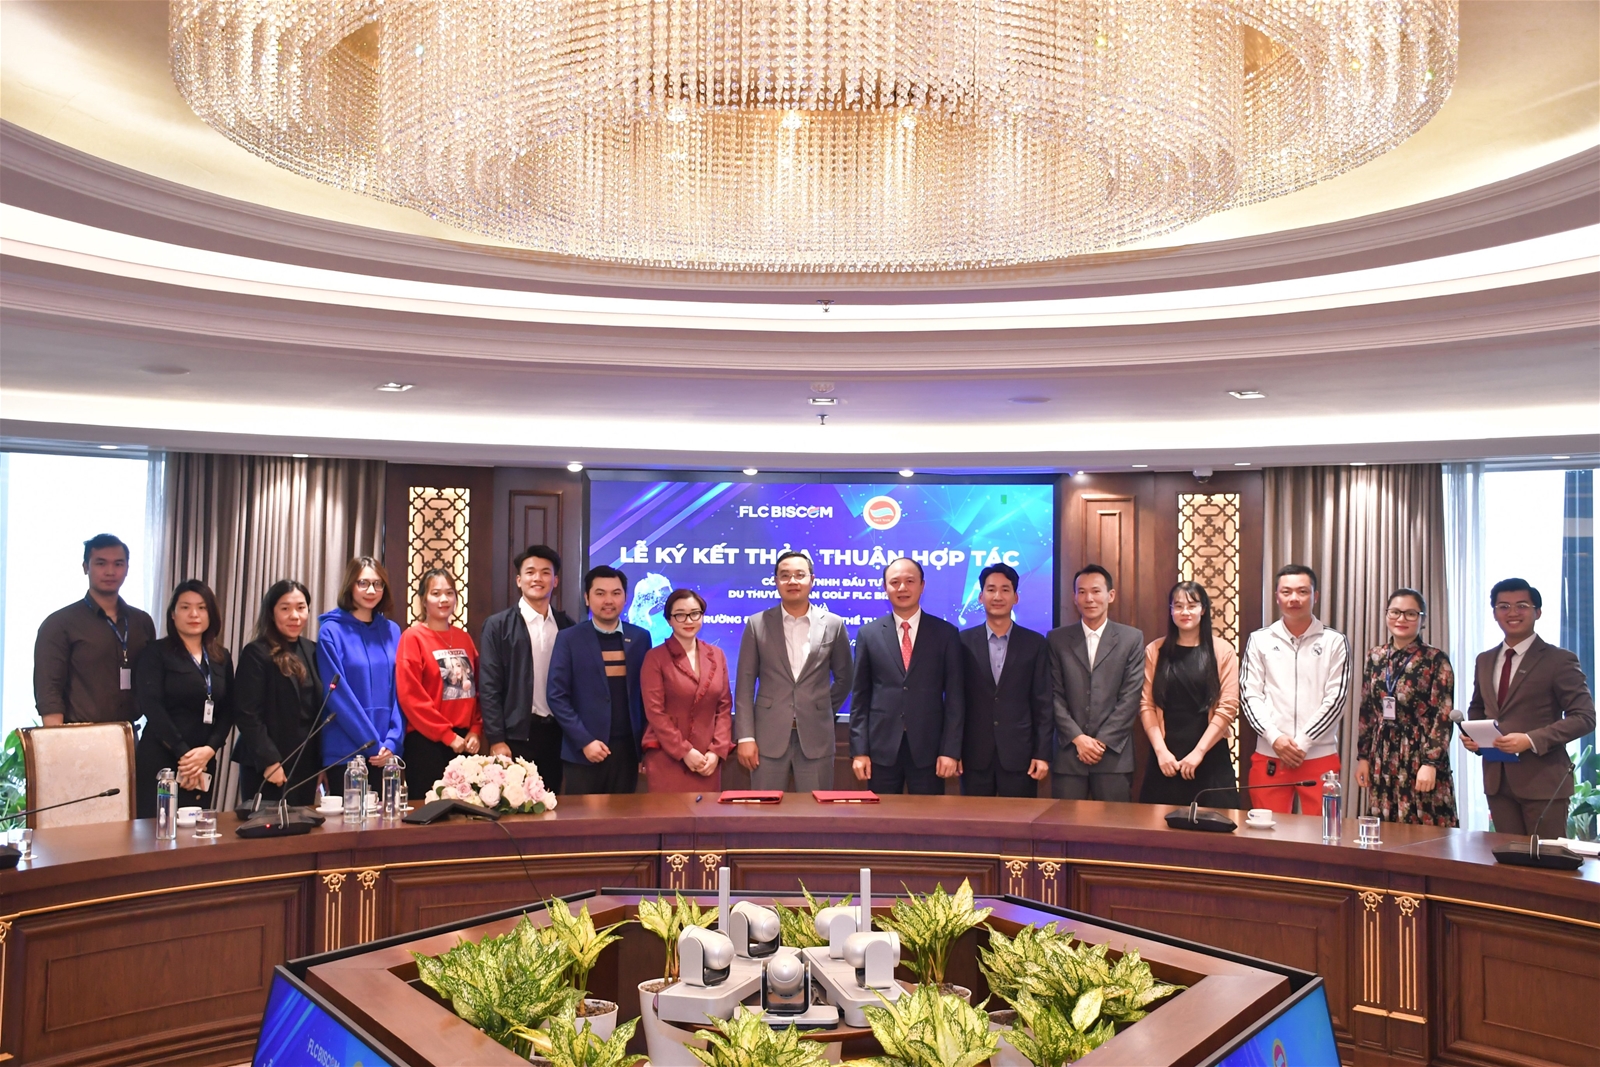 Trường Đại học TDTT Bắc Ninh ký kết thỏa thuận hợp tác với FLC Biscom  - Ảnh 5.